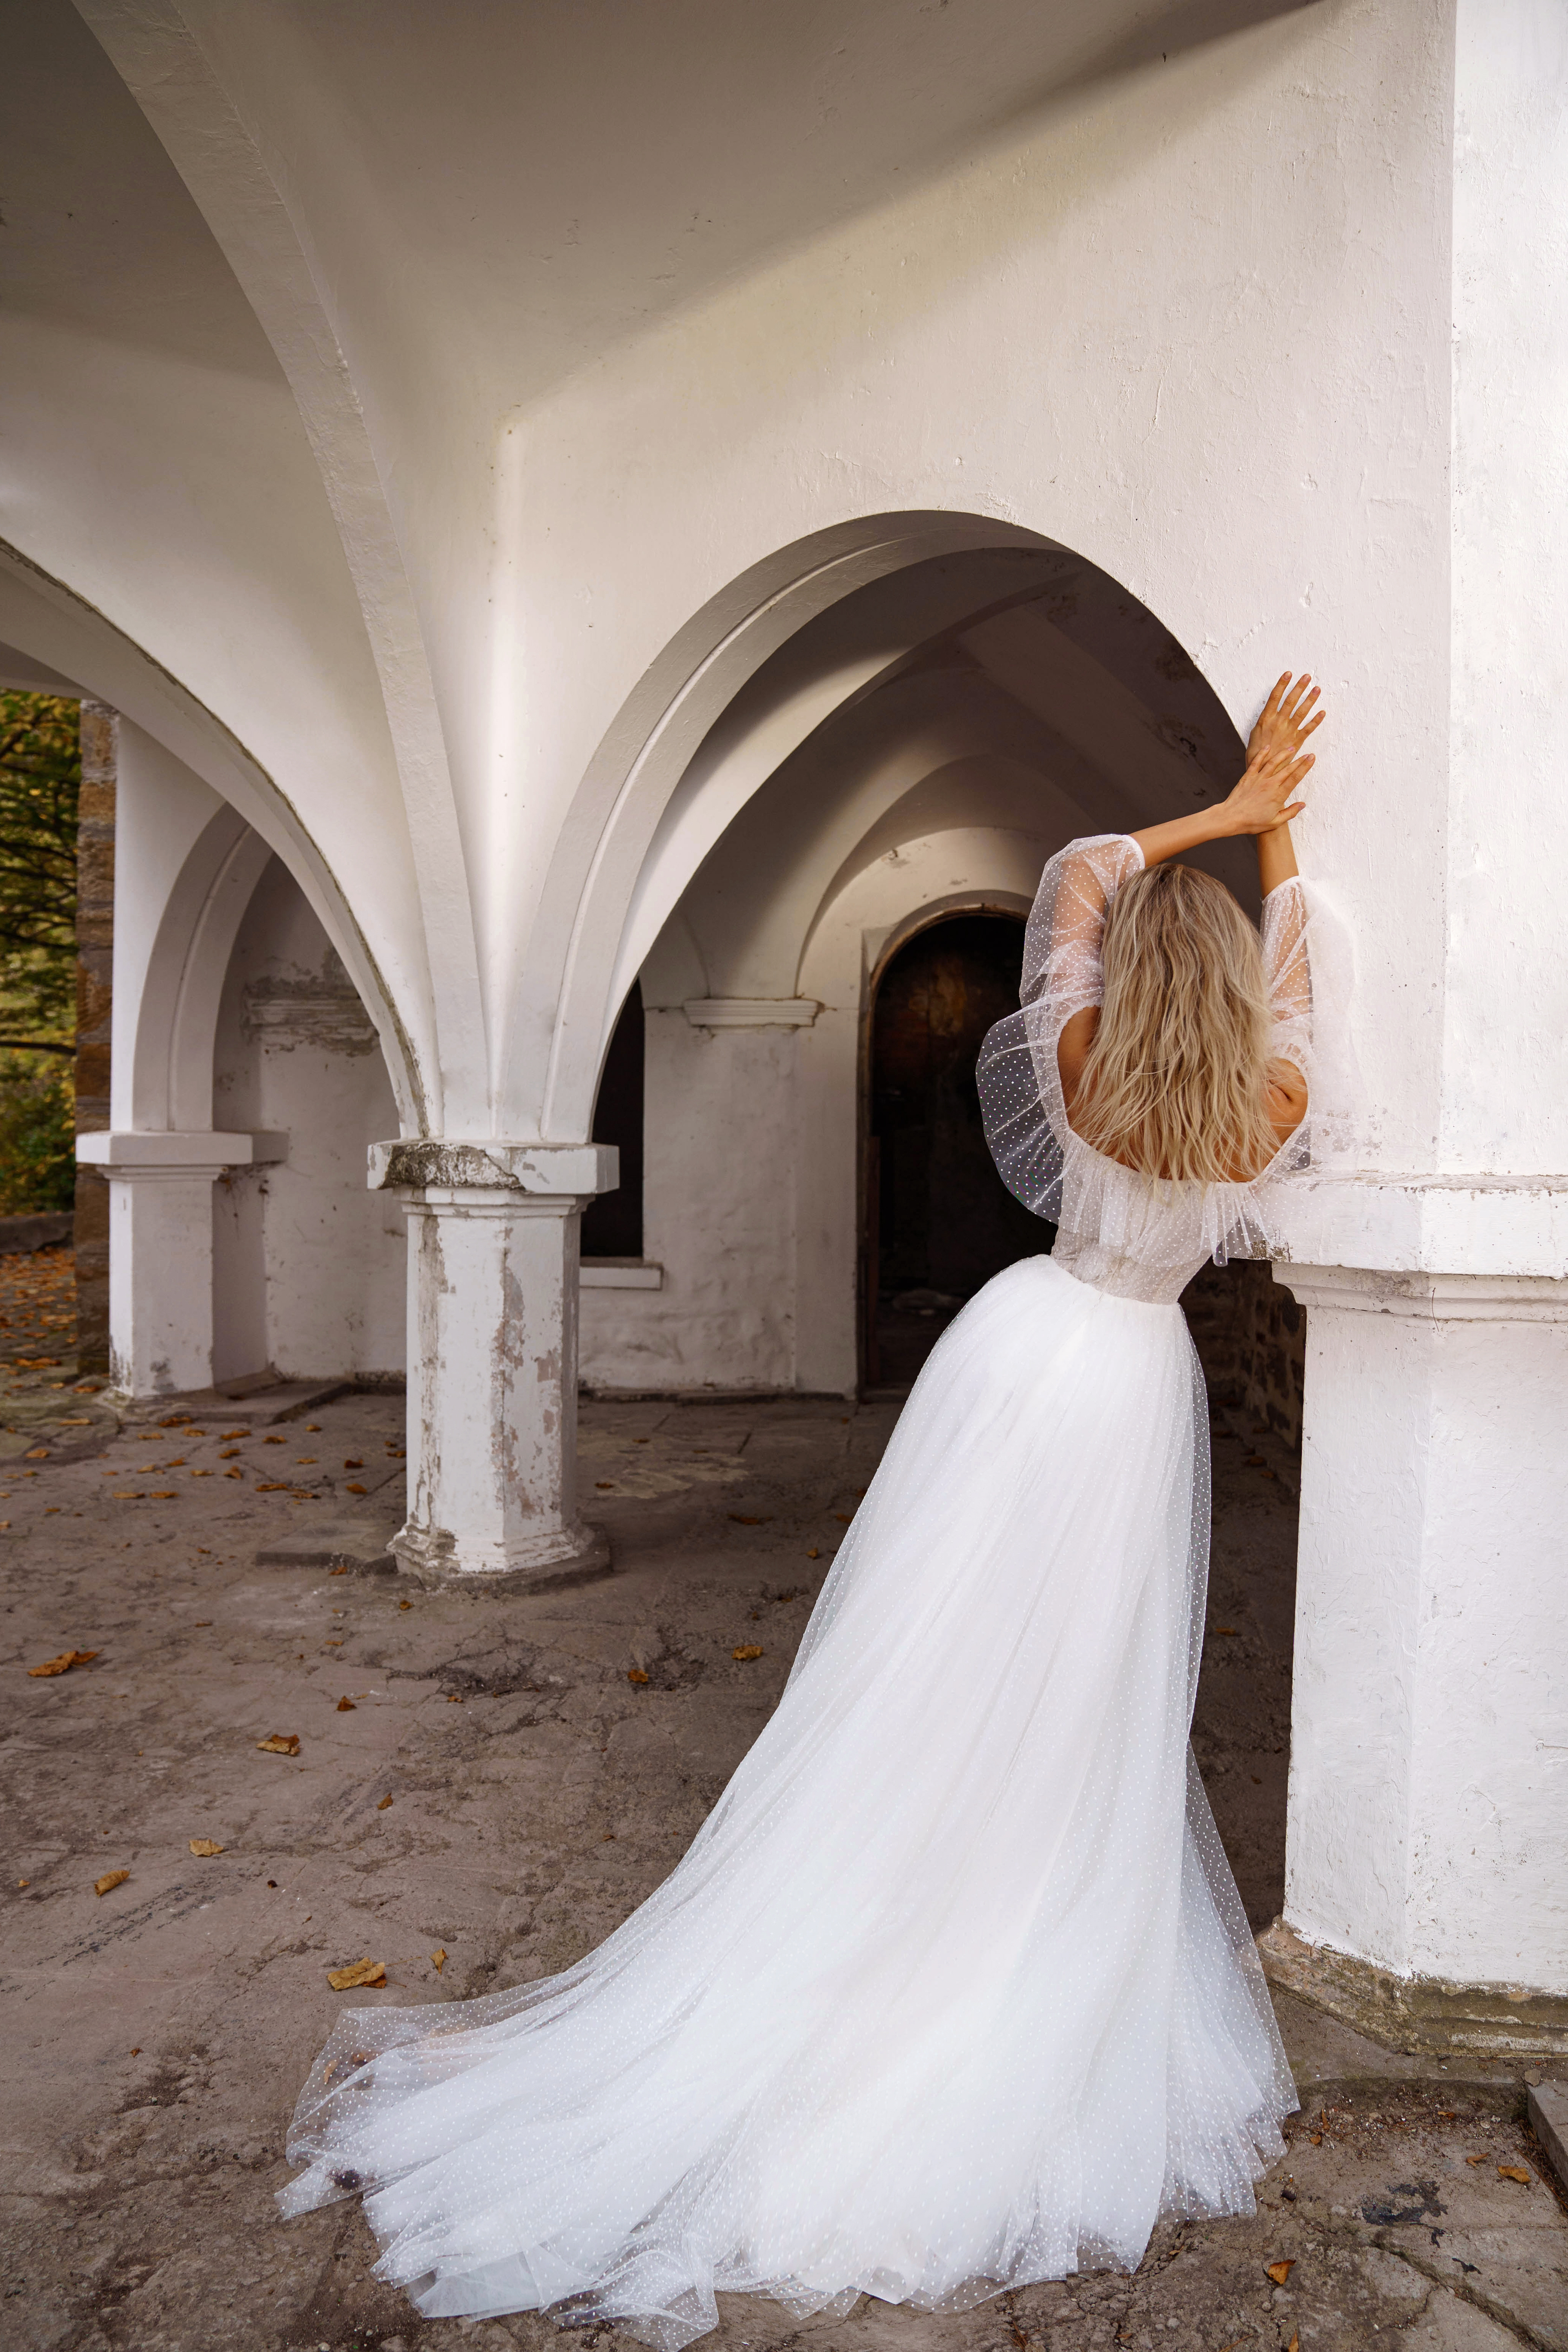 Купить свадебное платье «Левинс» Сонеста из коллекции 2022 года в салоне «Мэри Трюфель»